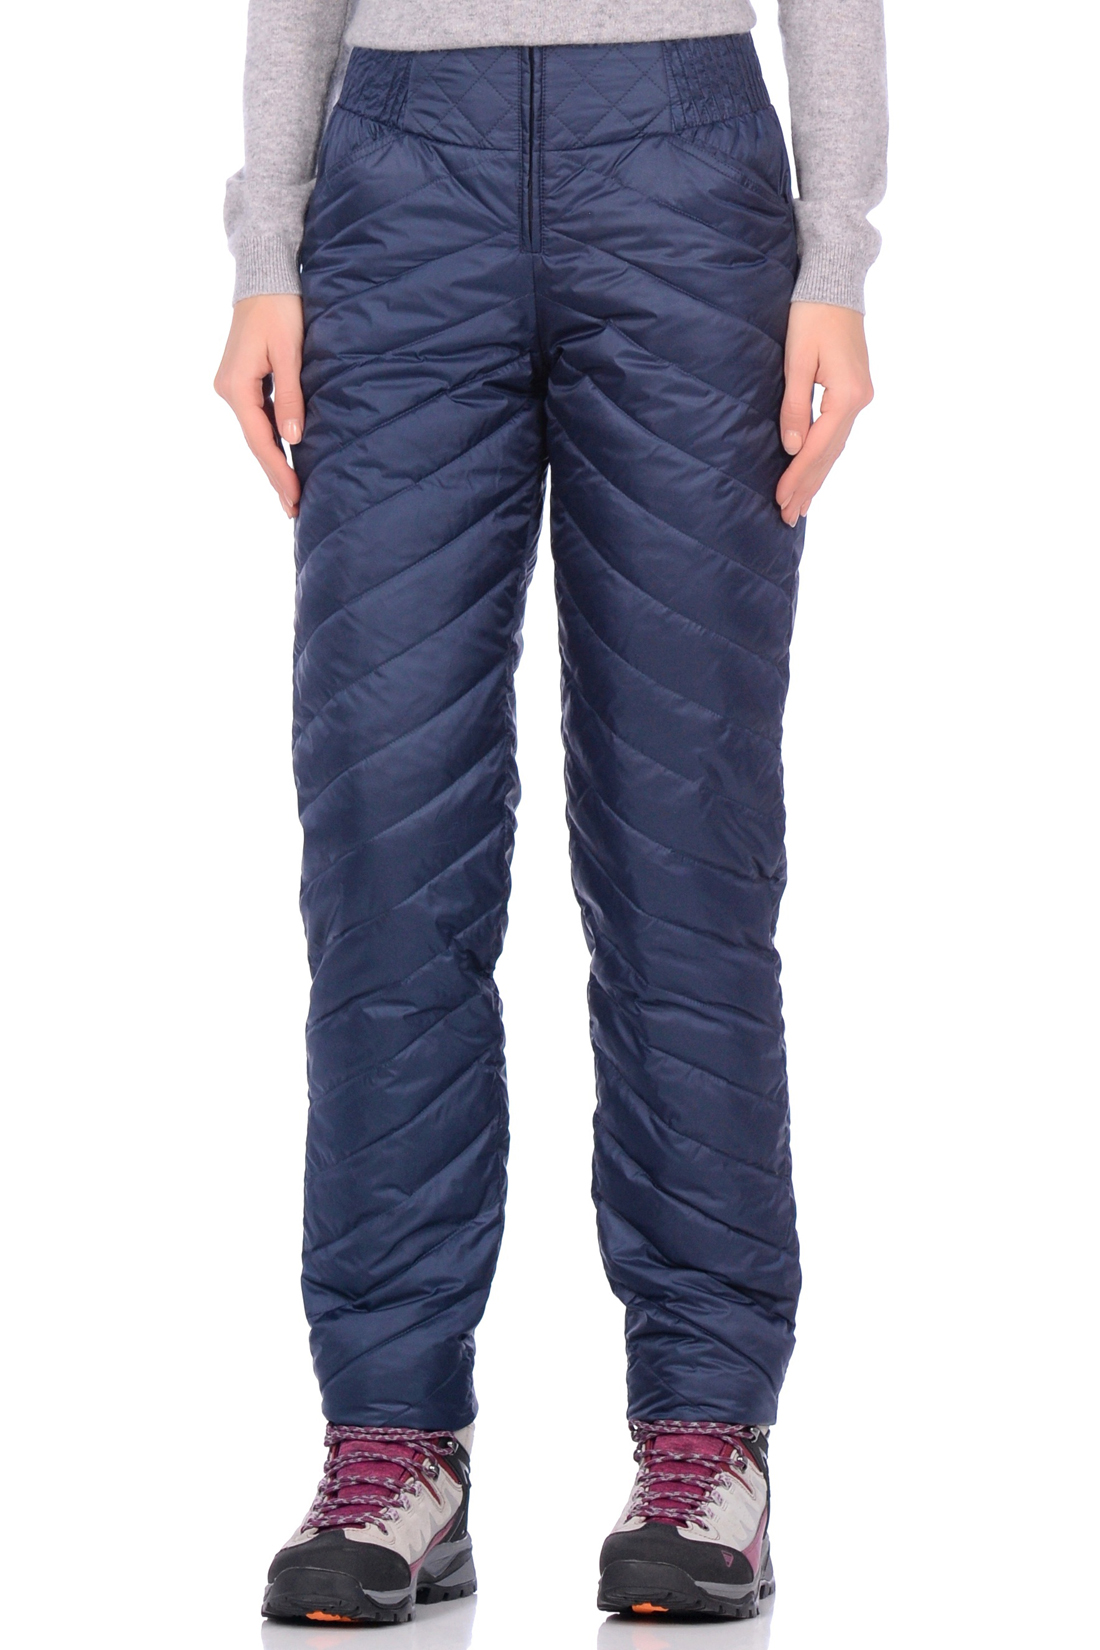 Утеплённые брюки на пуху (арт. baon B299550), размер S, цвет синий Утеплённые брюки на пуху (арт. baon B299550) - фото 1